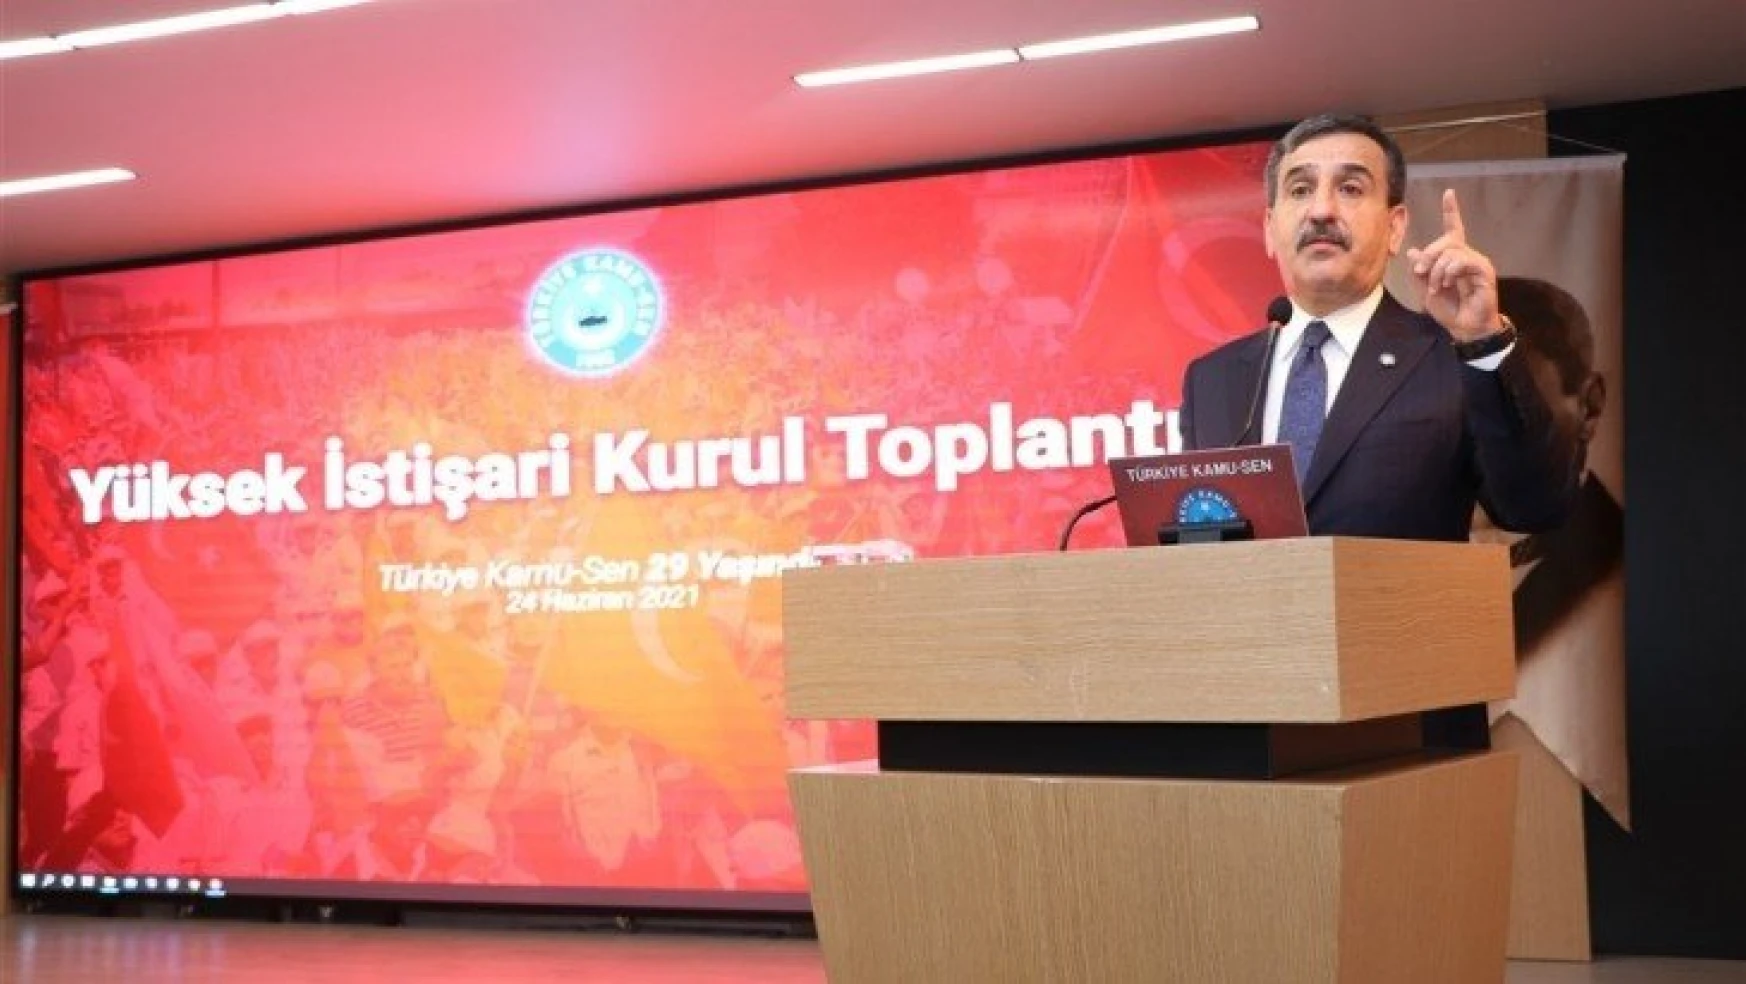 Yüksek İstişari Kurul Toplantısı Ankara'da Gerçekleştirildi